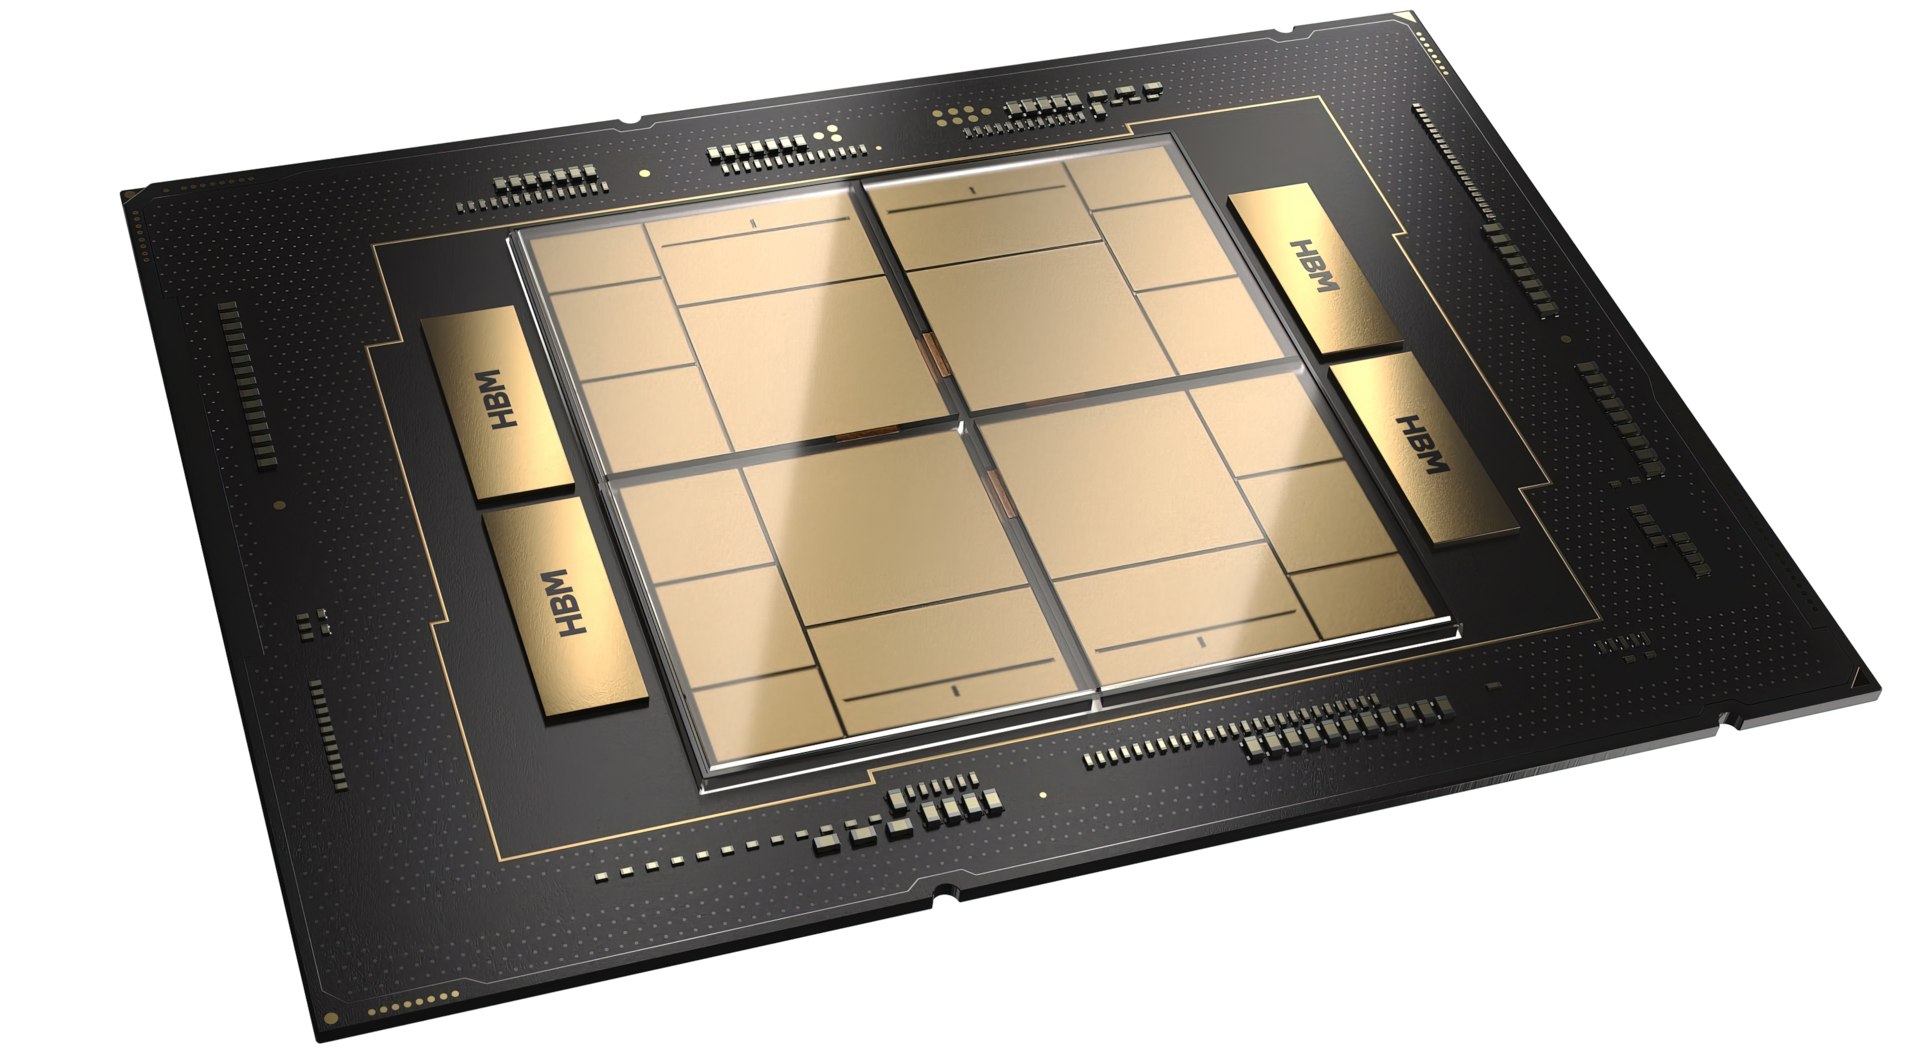 Intel Xeon W-2400 Workstation/HEDT-CPUs kommen im März auf den Markt, Tests am 22. Februar (Gerücht)